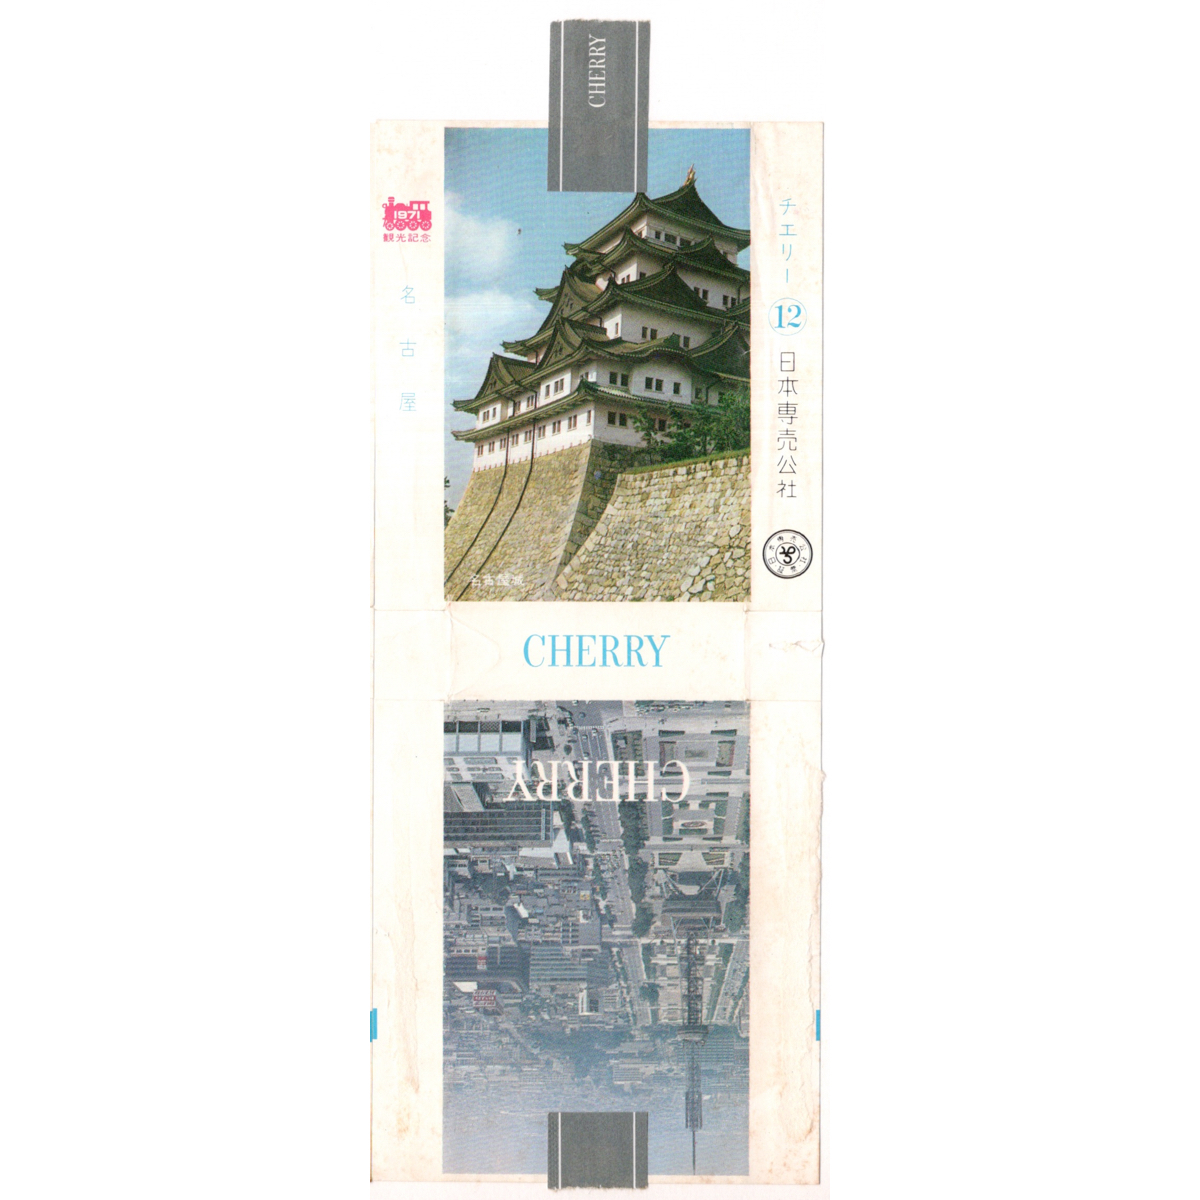 古い タバコ 煙草 ラベル パッケージ CHERRY 1971 観光記念 東京 / 東京 / 名古屋 /名古屋 4種 台紙に貼り付け_画像5